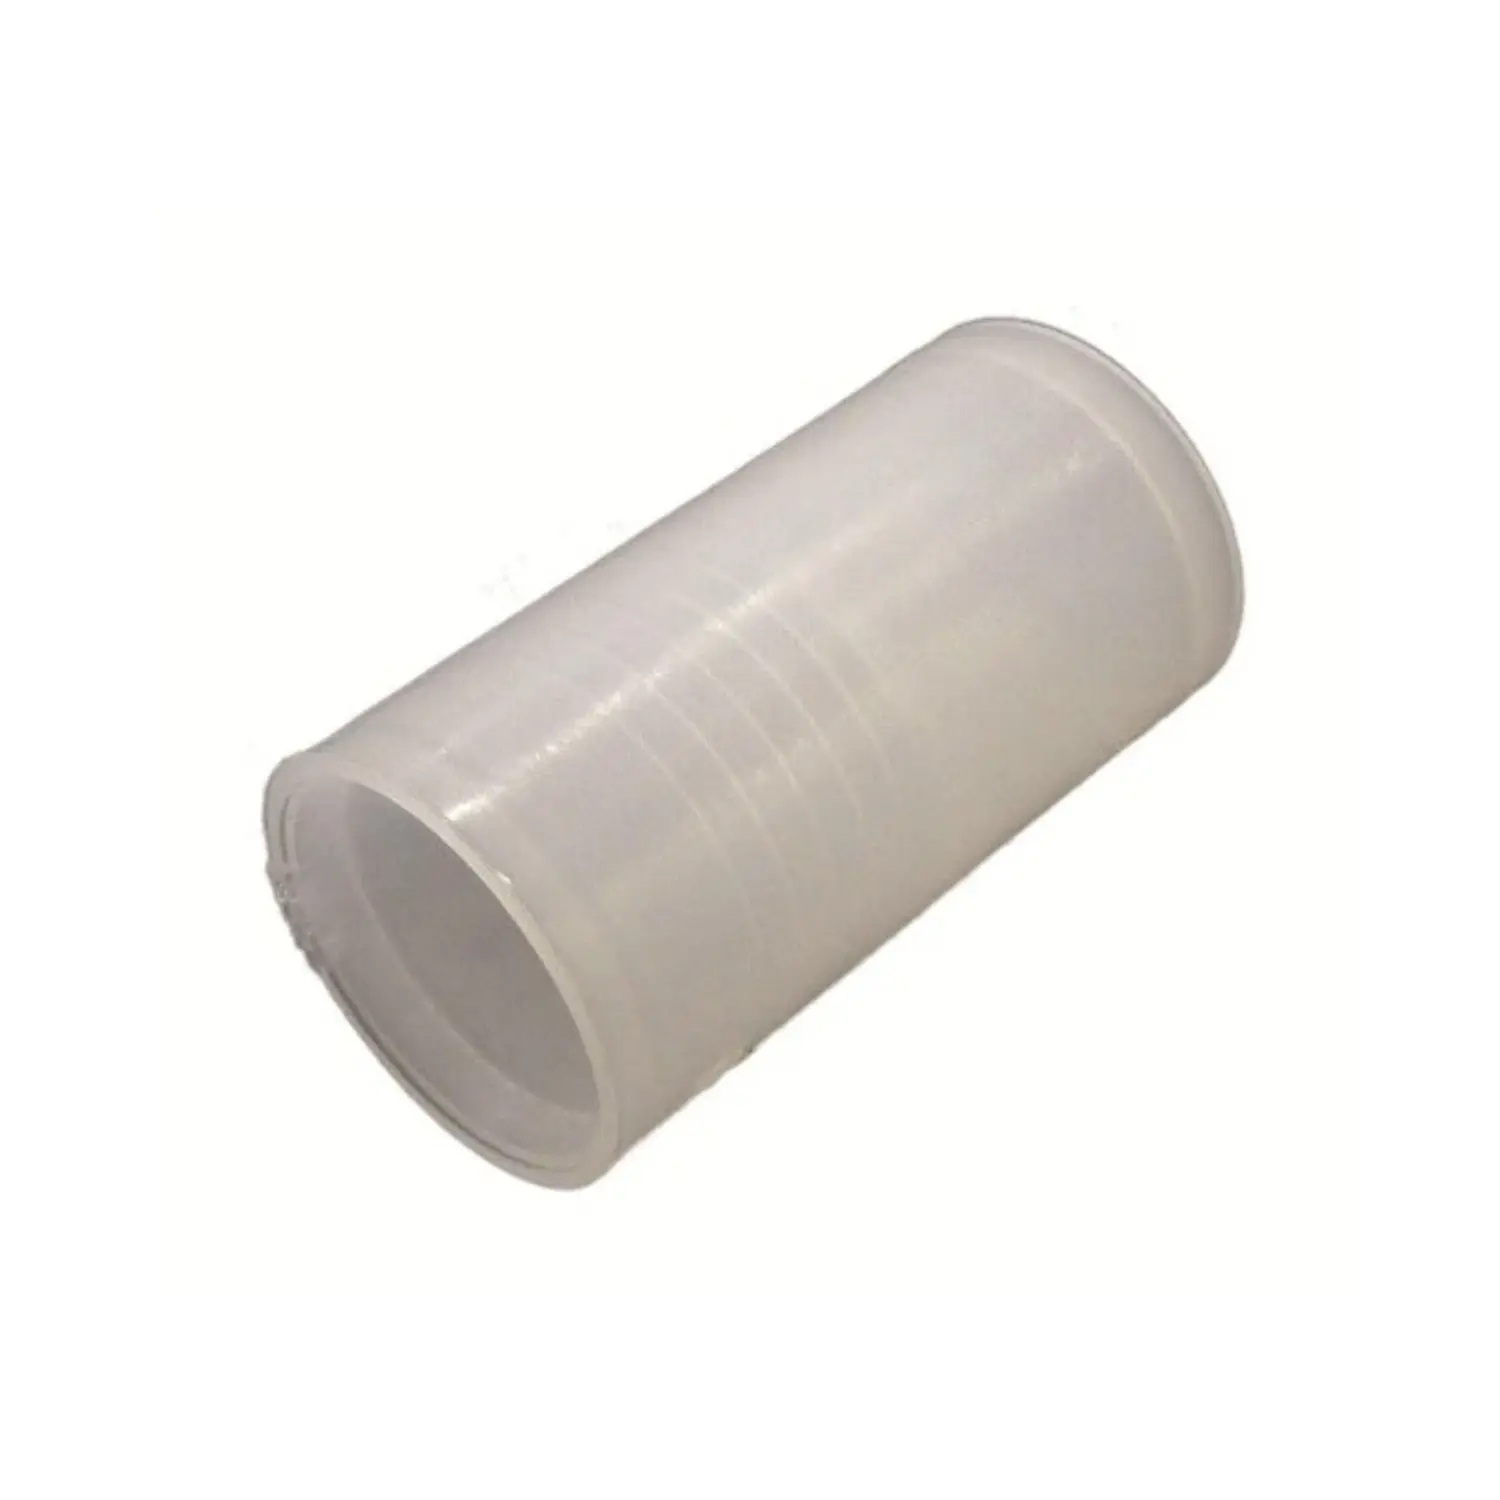 immagine del prodotto manicotto giunta tubo corrugato impianto elettrico da incasso 25 mm